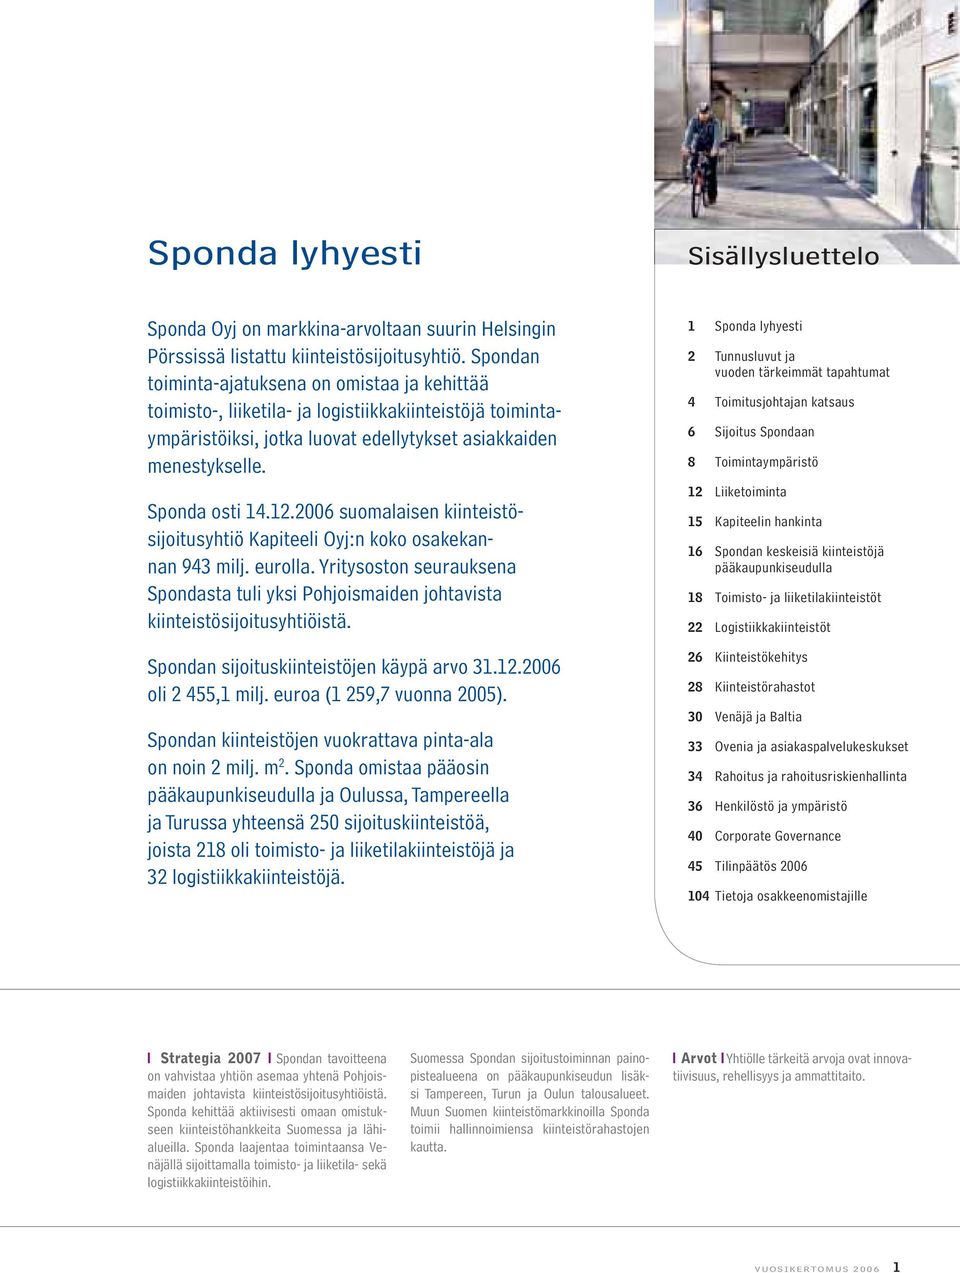 2006 suomalaisen kiinteistösijoitusyhtiö Kapiteeli Oyj:n koko osakekannan 943 milj. eurolla. Yritysoston seurauk sena Spondasta tuli yksi Pohjoismaiden johtavista kiinteistösijoitusyhtiöistä.